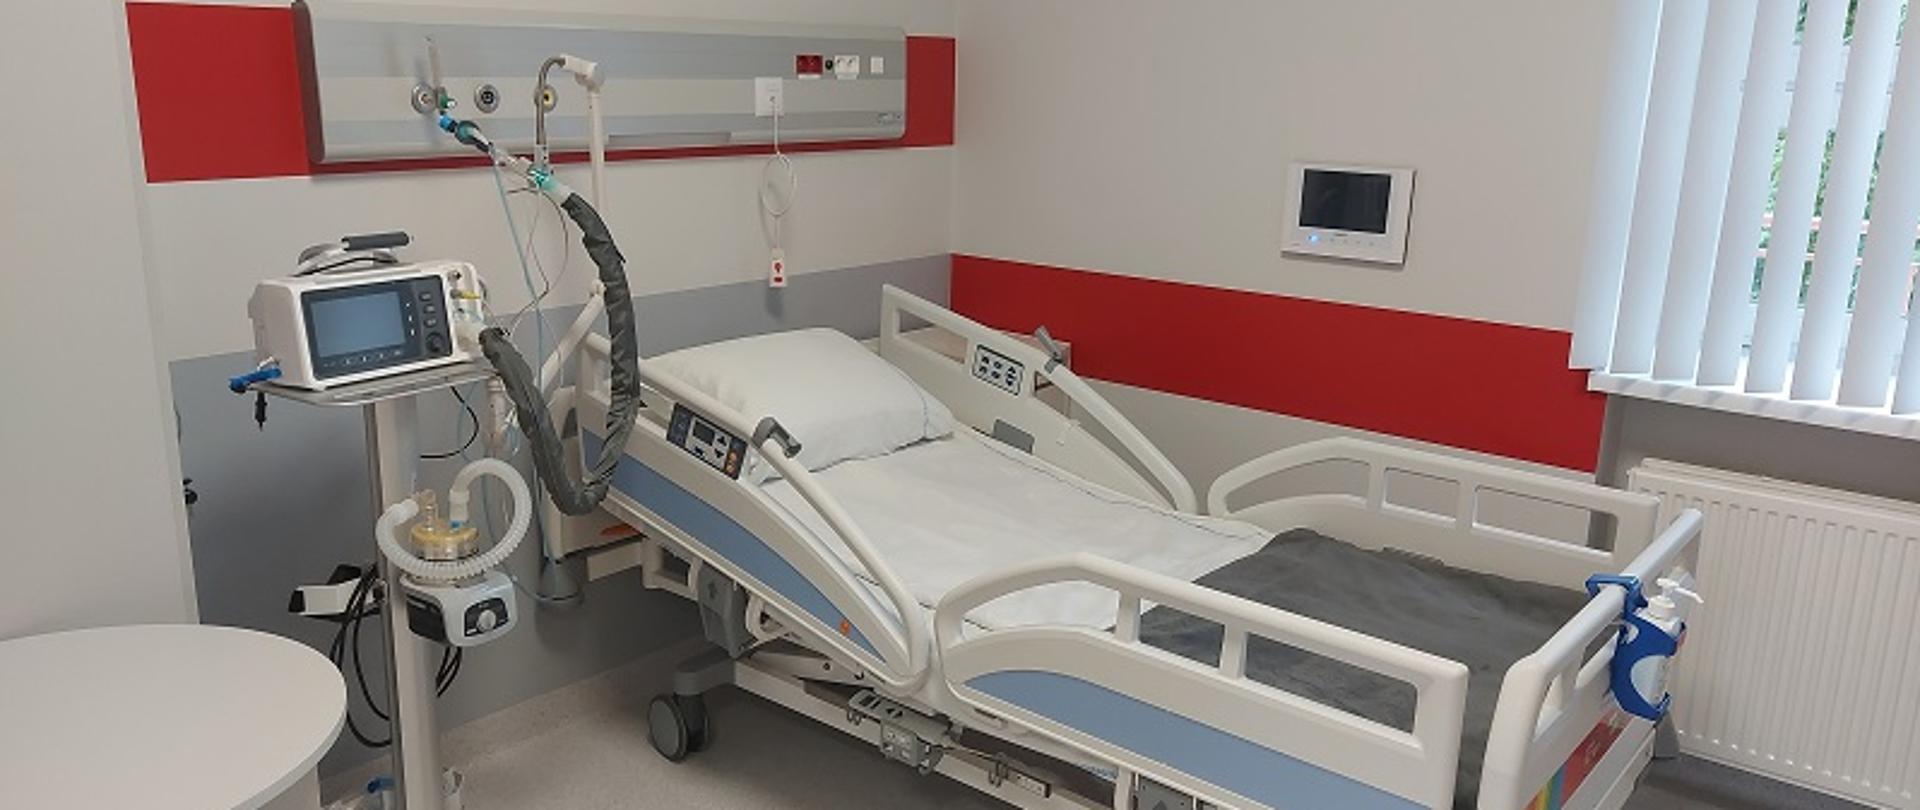 Na zdjęciu widoczne łóżko szpitalne oraz aparatura medyczna